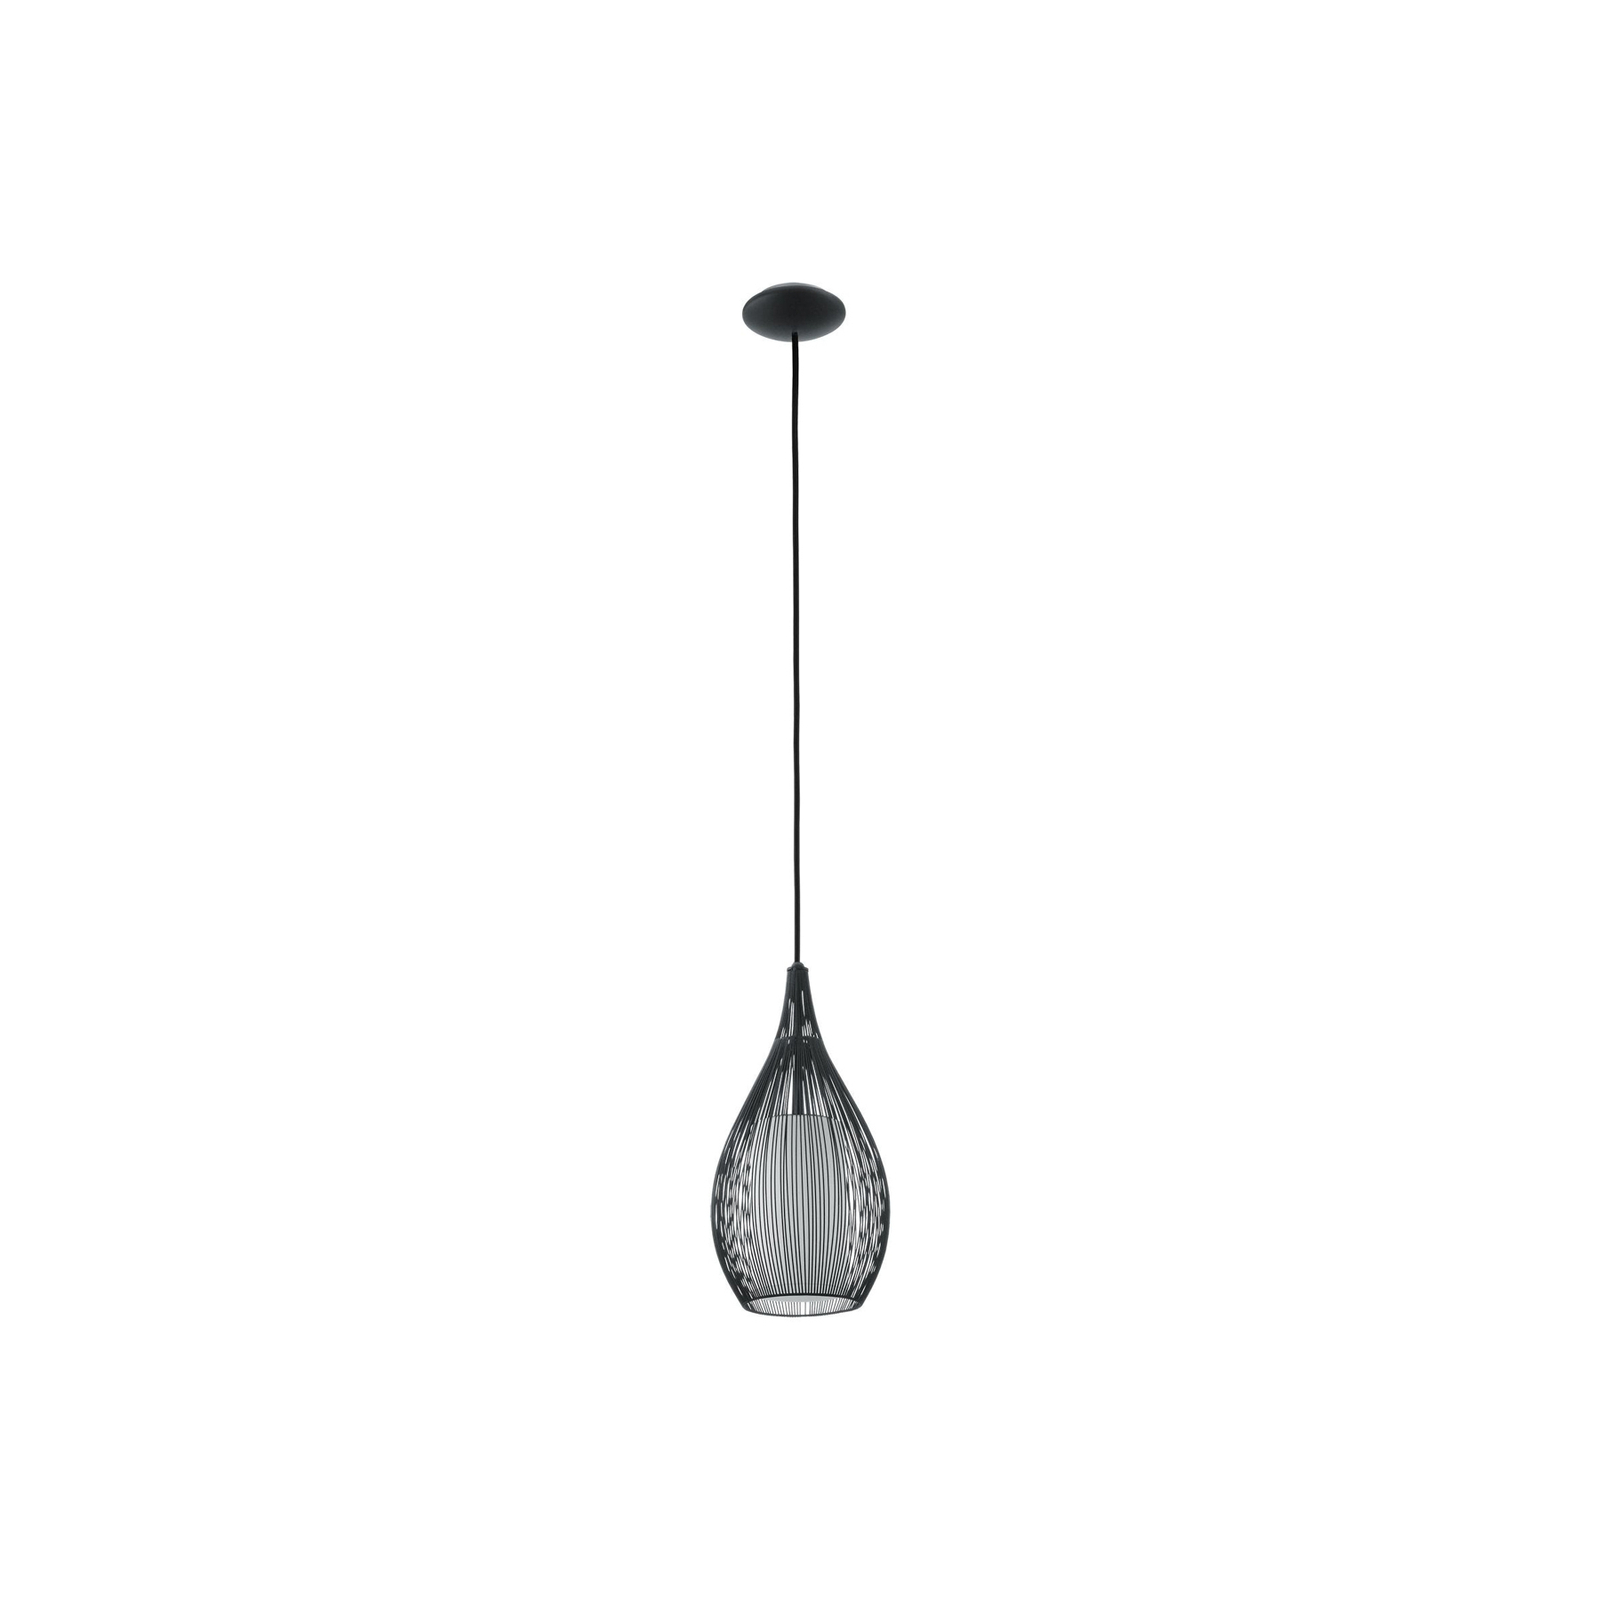 Beacon függesztéklámpa Solis, fekete, fém, üveg, Ø 19 cm